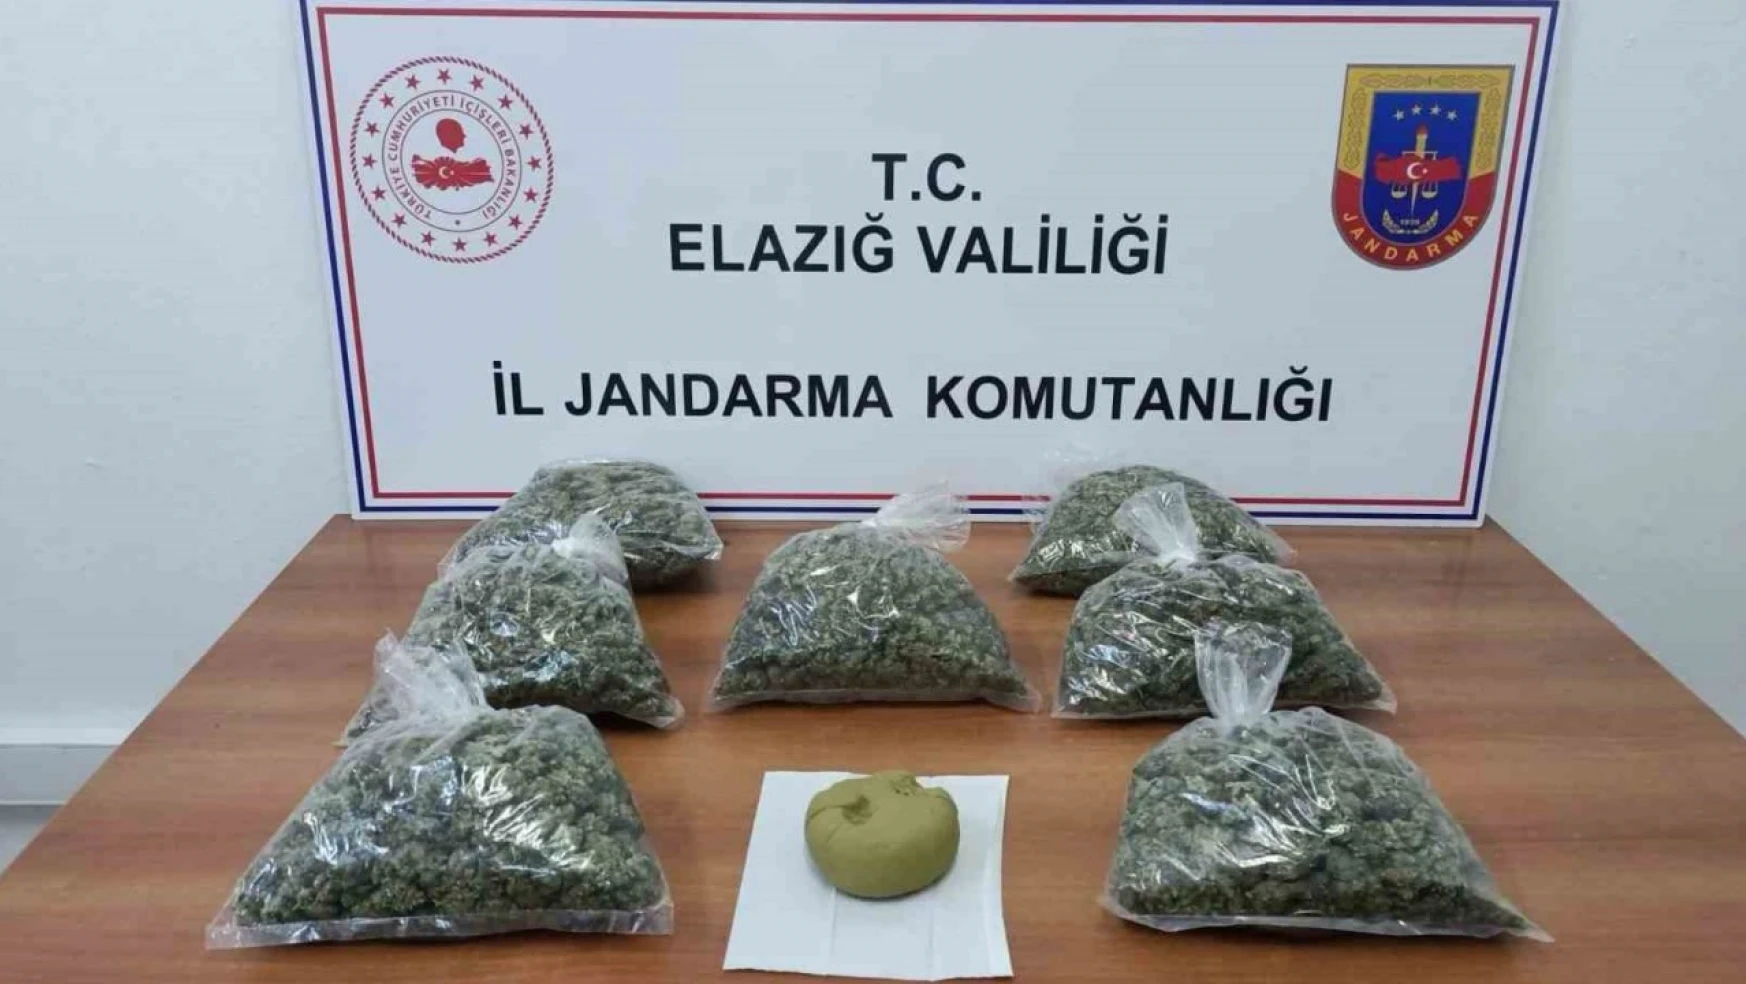 Elazığ'da uyuşturucu madde taşıyan 4 kişi tutuklandı